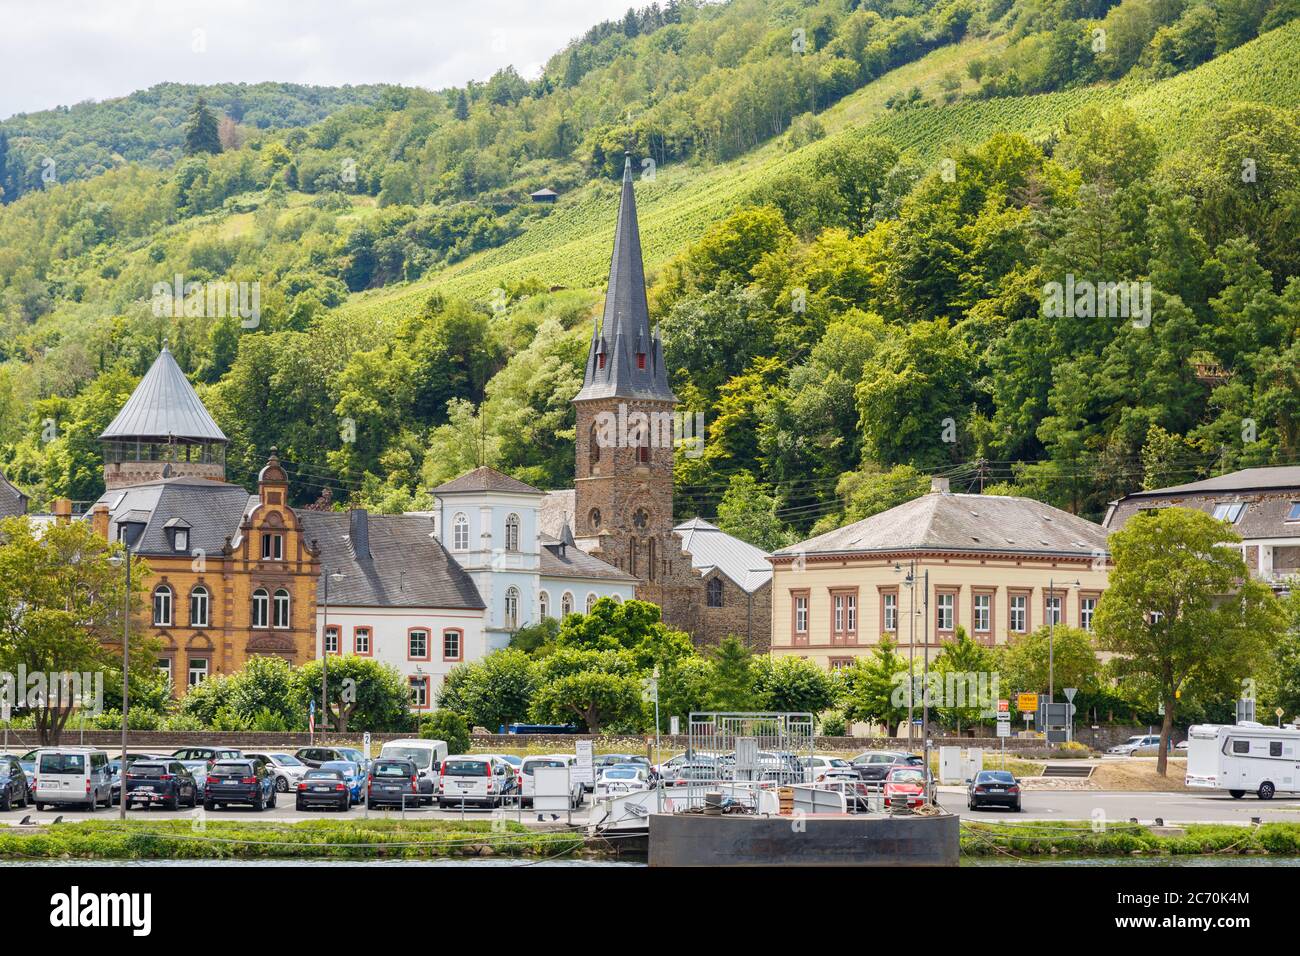 Blick auf Traben-Trarbach von der Mosel, Rheinland-Pfalz, Deutschland Foto Stock